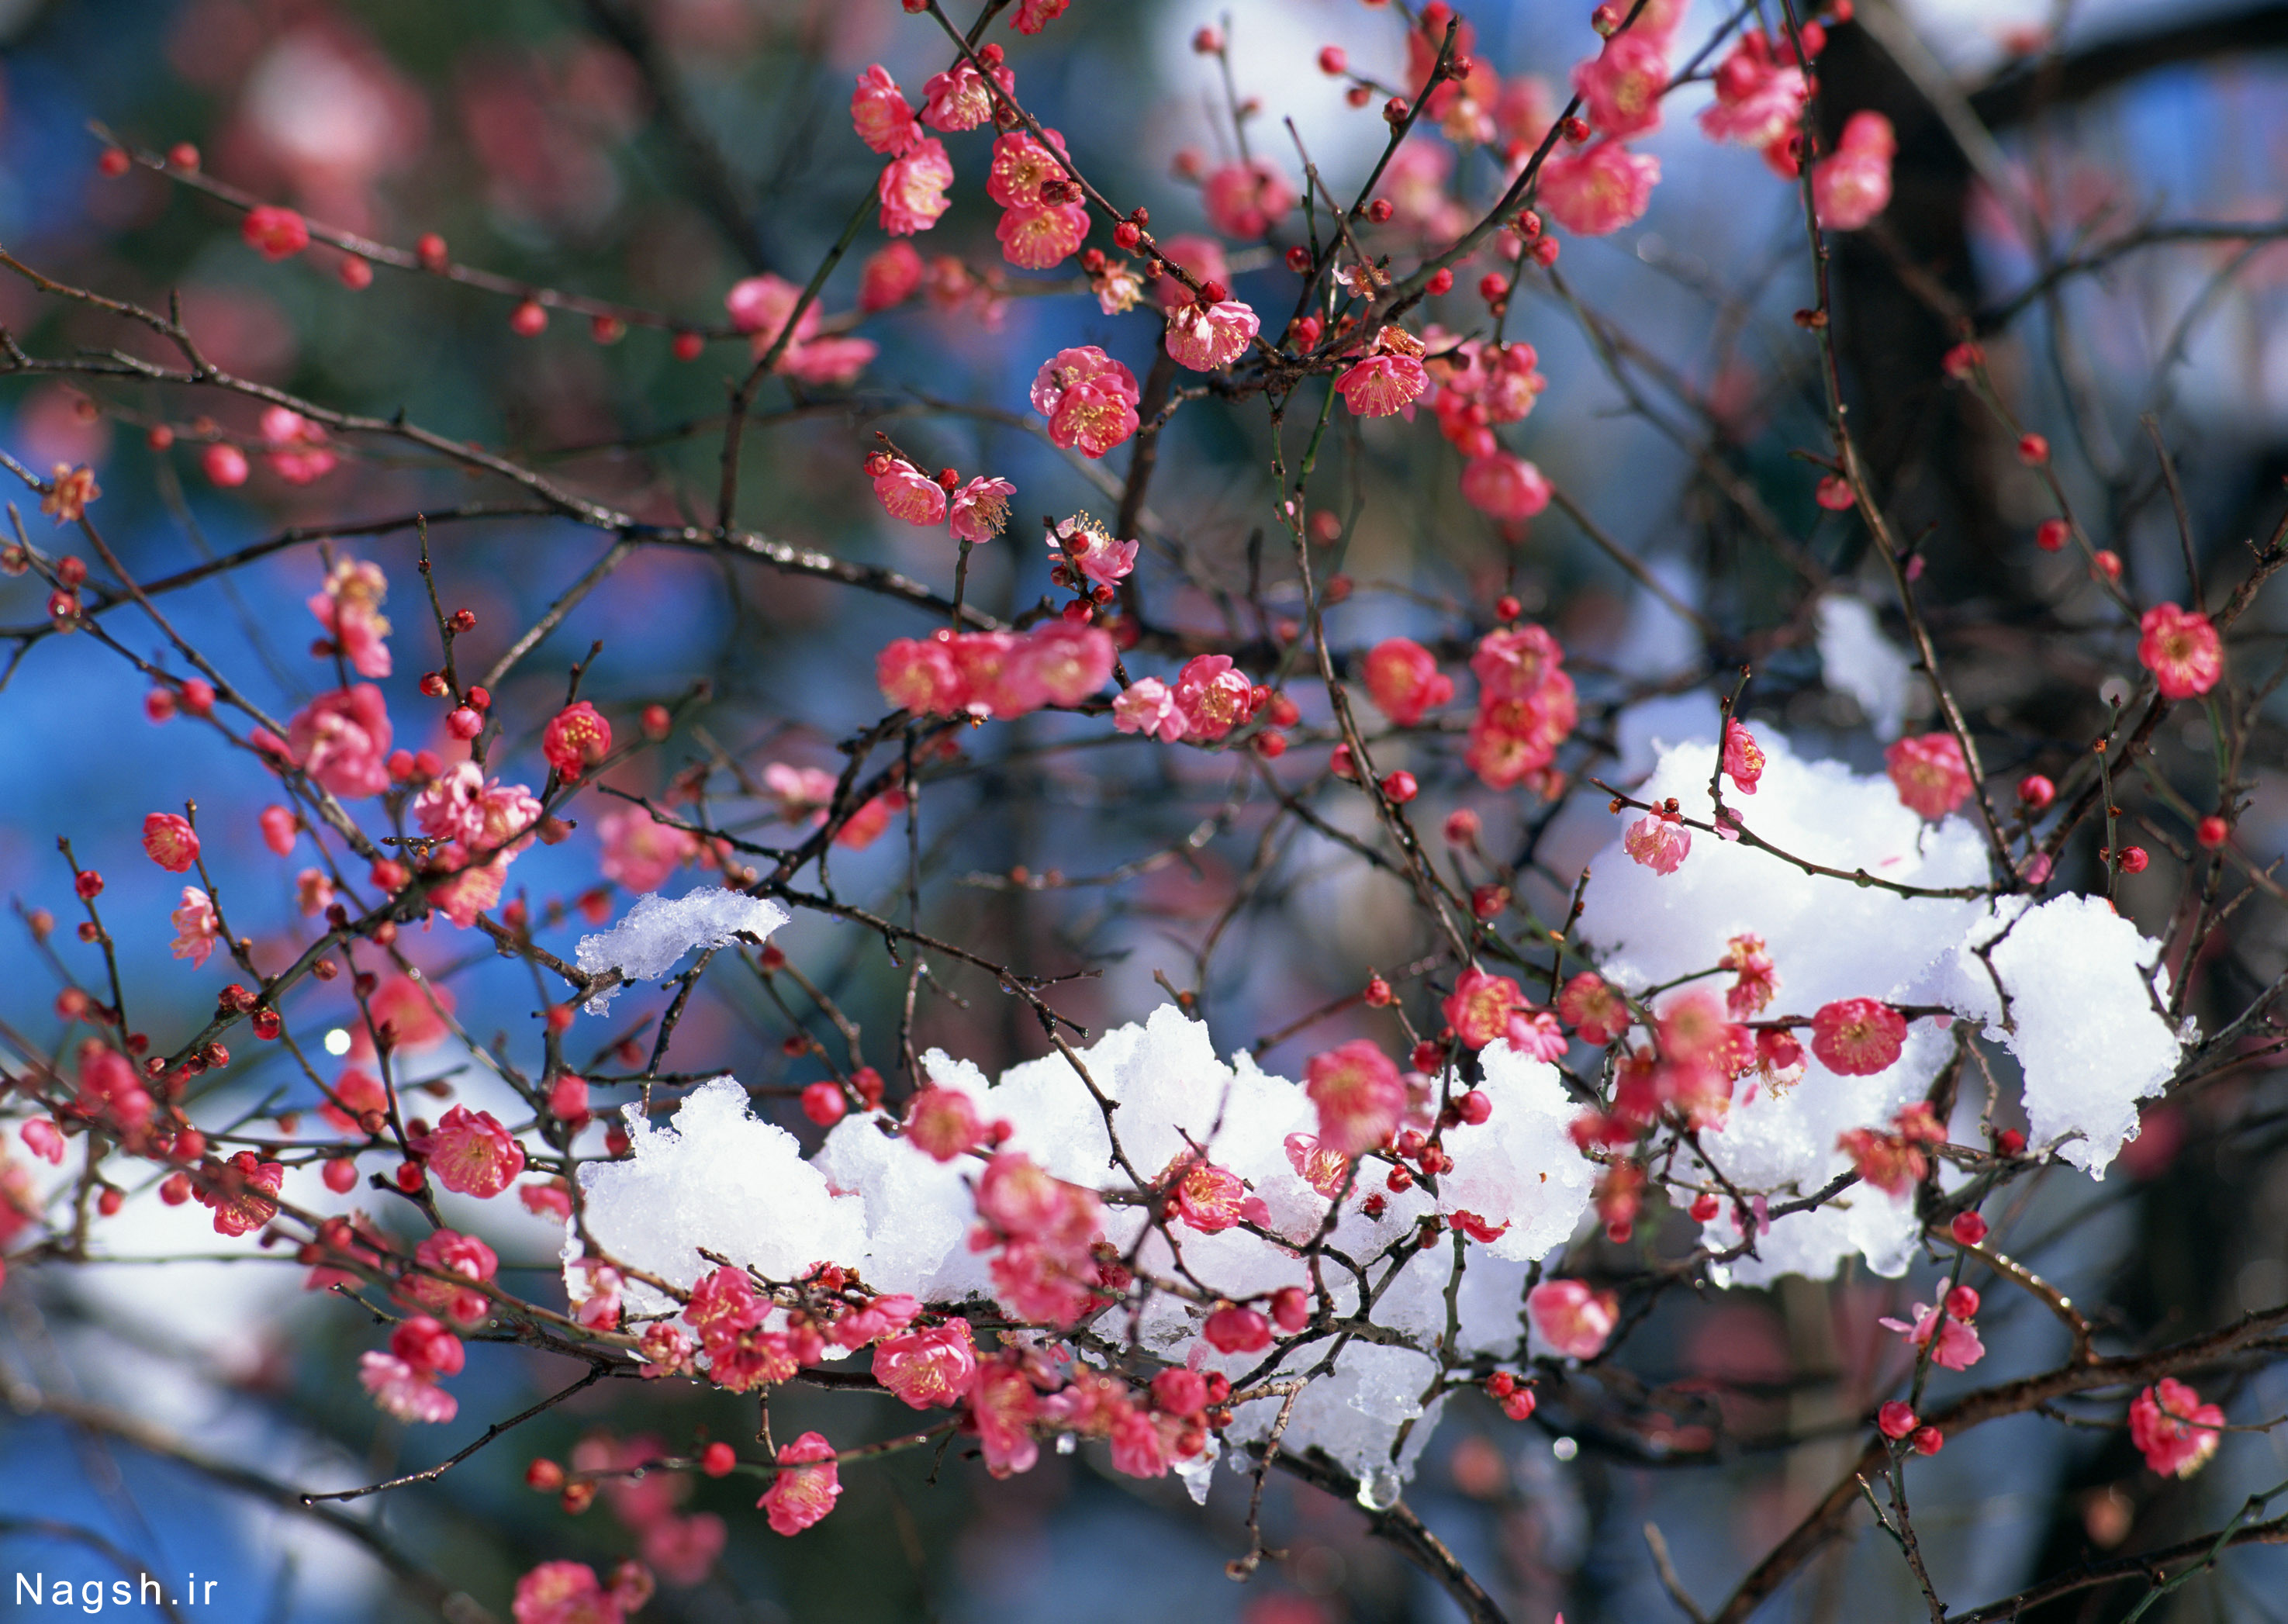 شکوفه های درخت در زیر برف